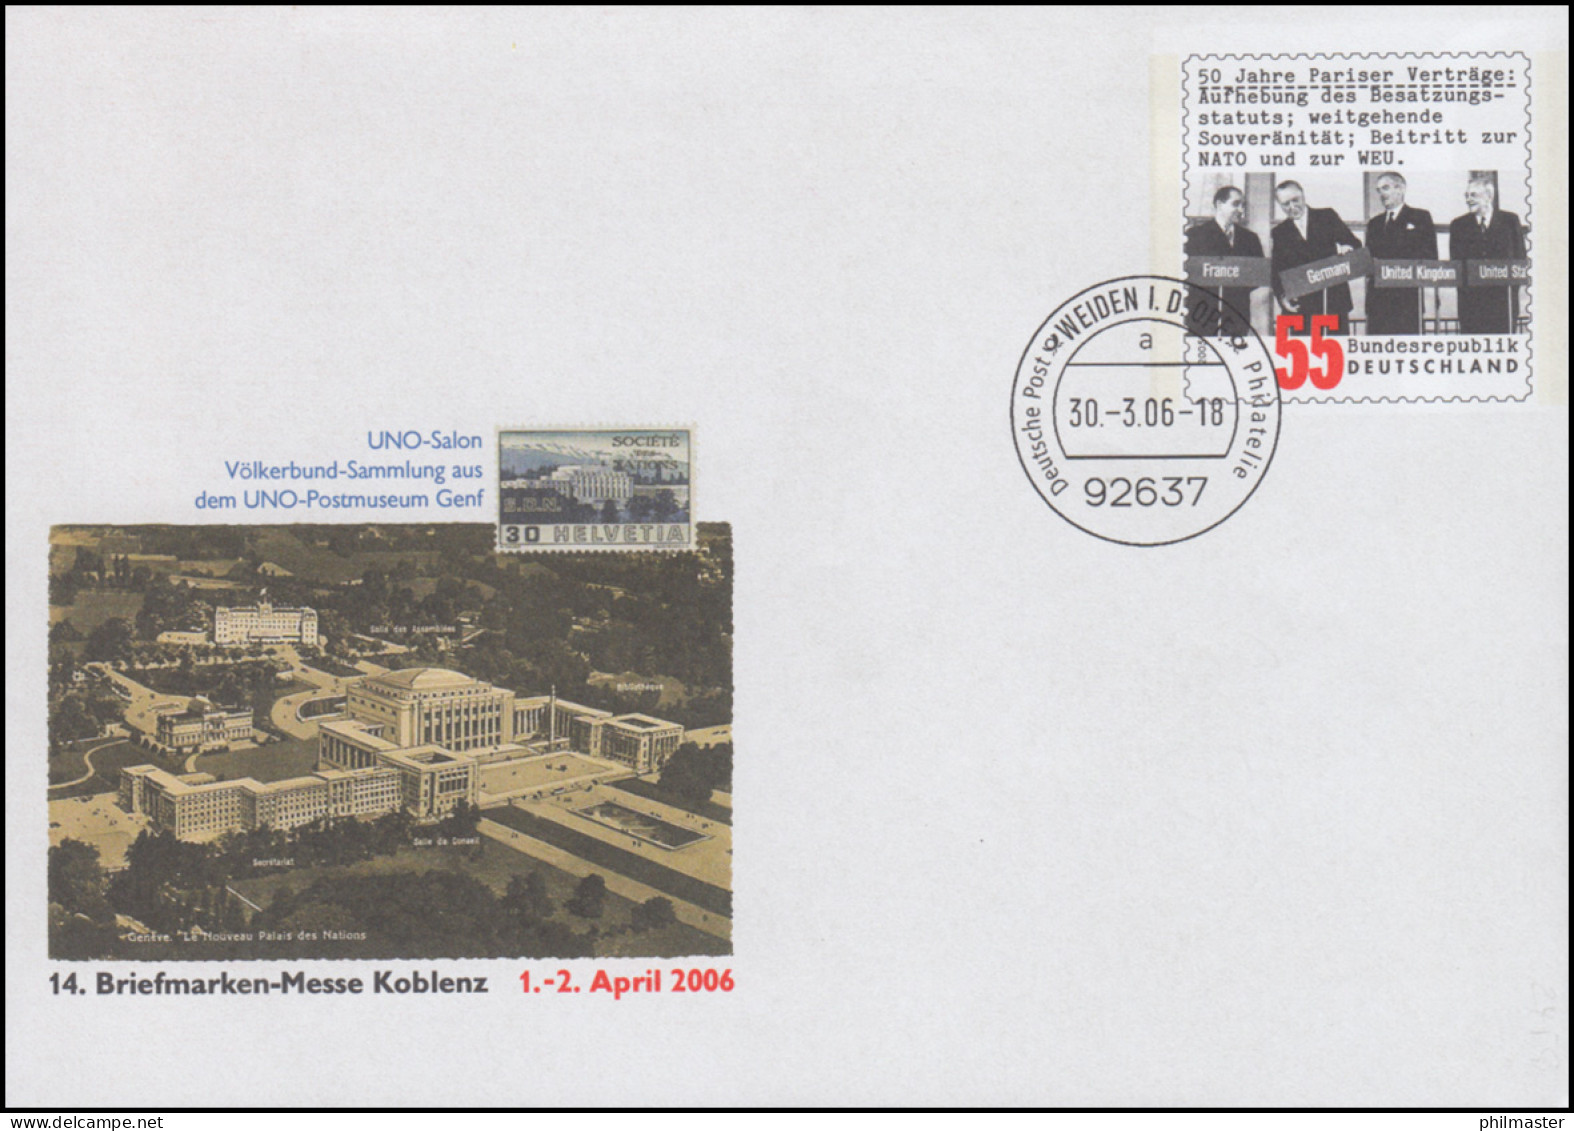 USo 116 Messe Koblenz - UNO Postmuseum Genf 2006, VS-O Weiden 30.3.06 - Briefomslagen - Ongebruikt